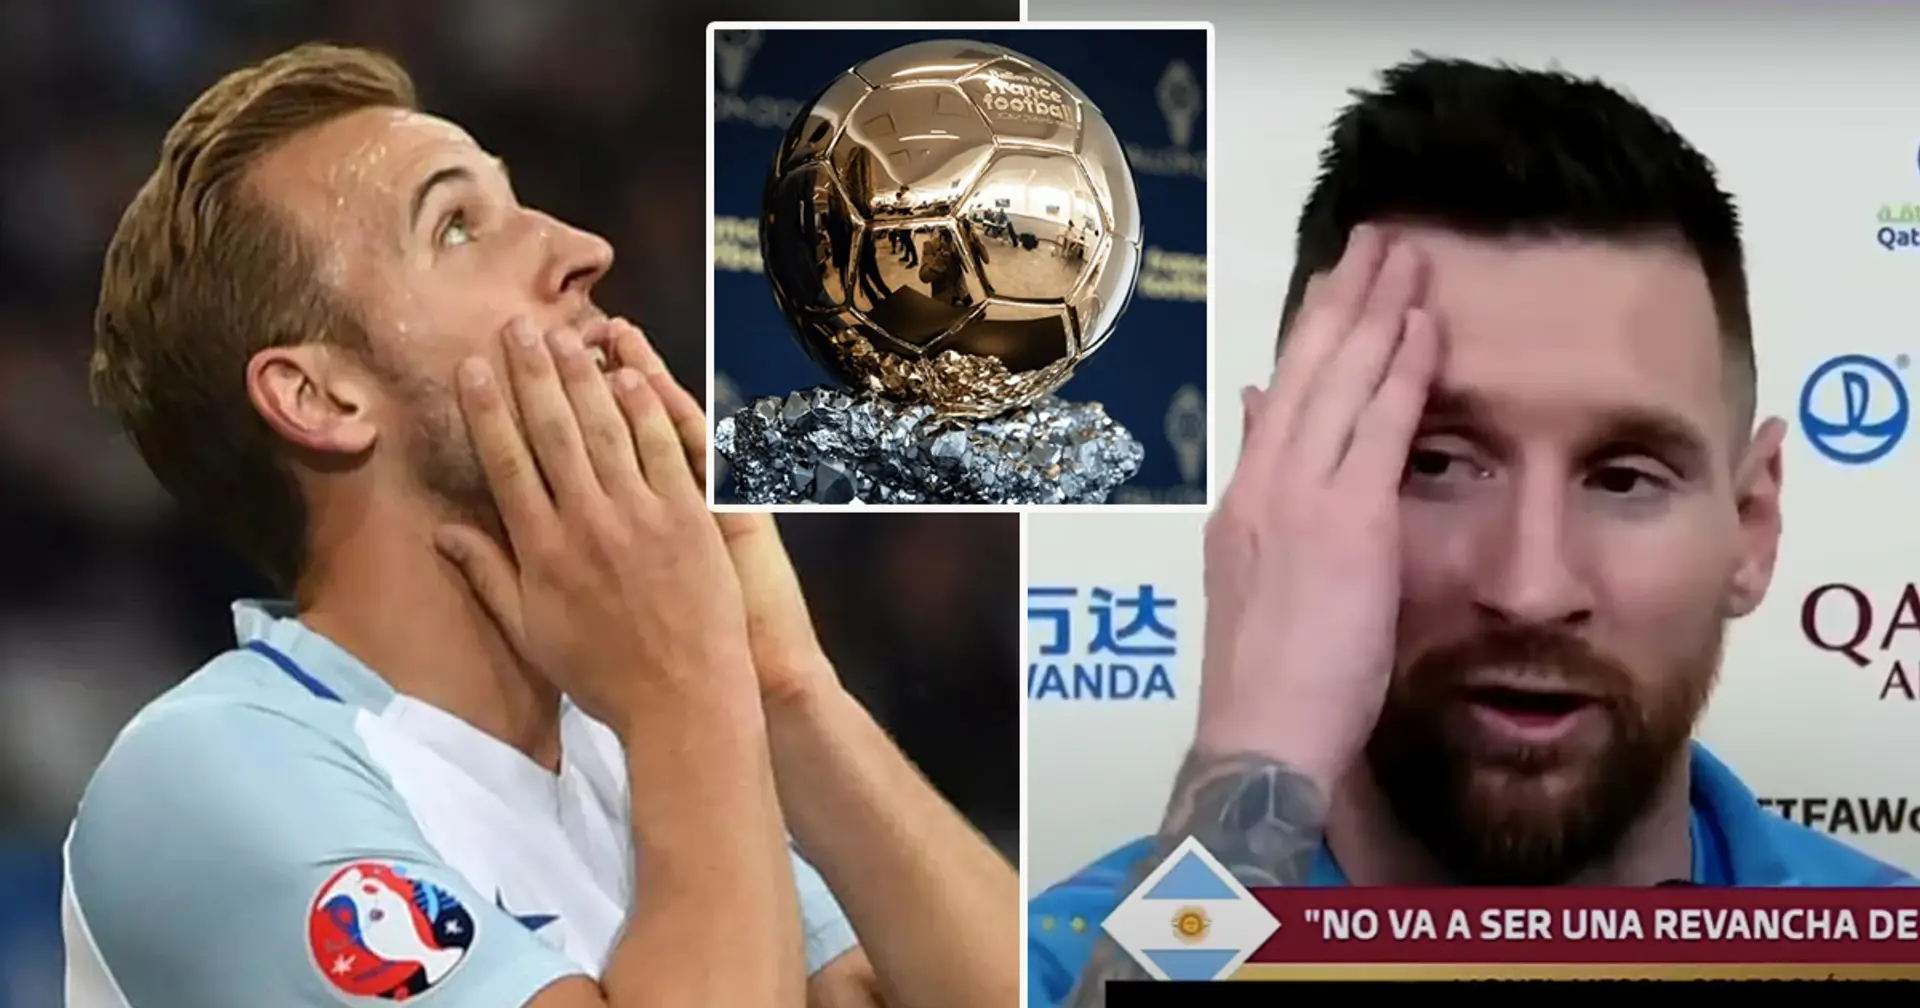 "Question pour les fans de Messi": un fan de Man City se ridiculise en faisant une analogie sur Kane au débat sur le Ballon d'Or